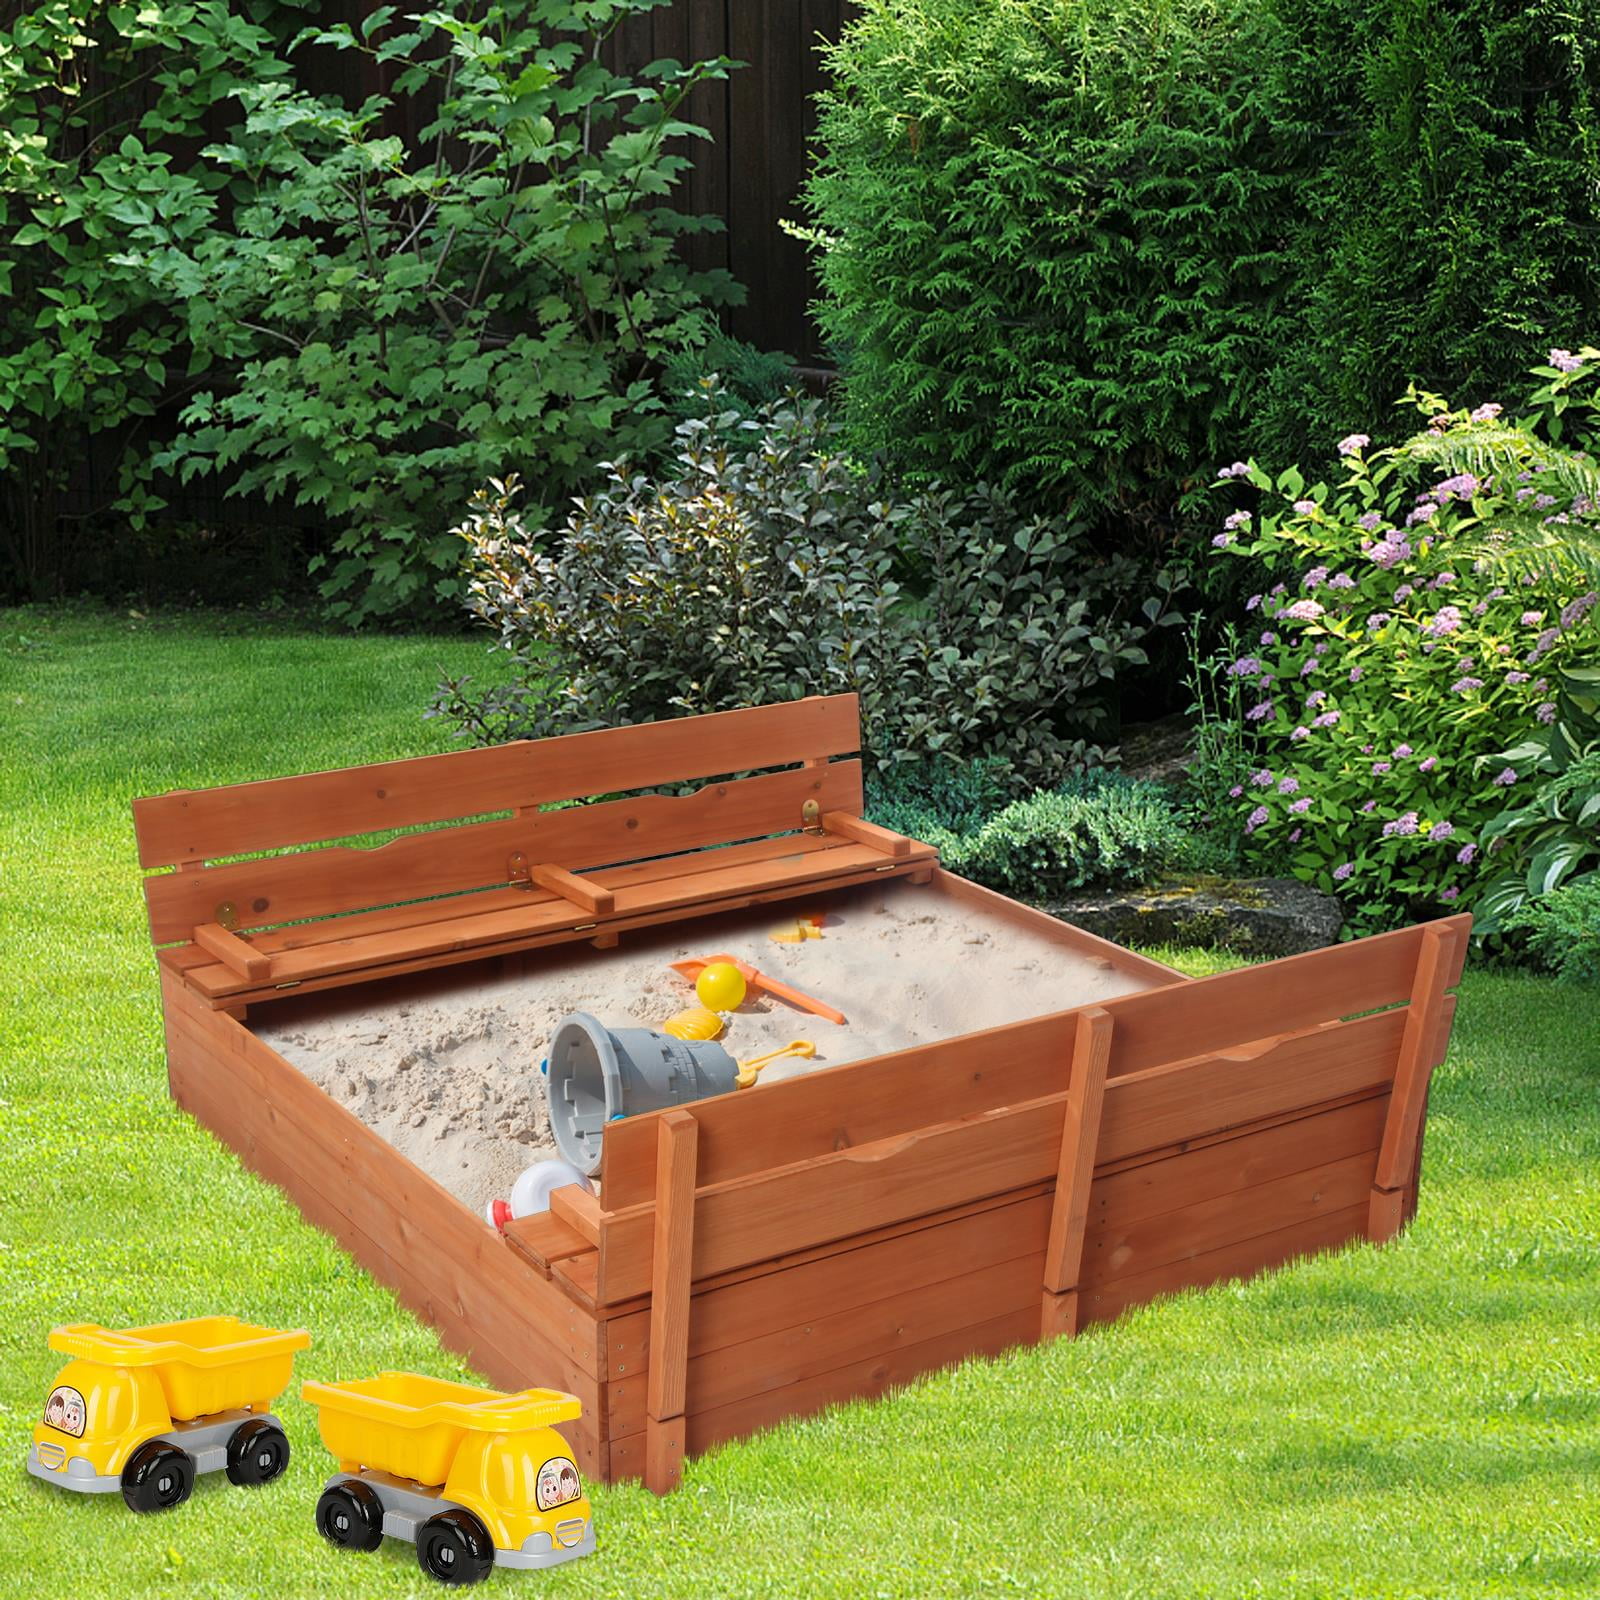 Ktaxon Convertible Cedar Sandbox Two Bench for Kids - Walmart.com